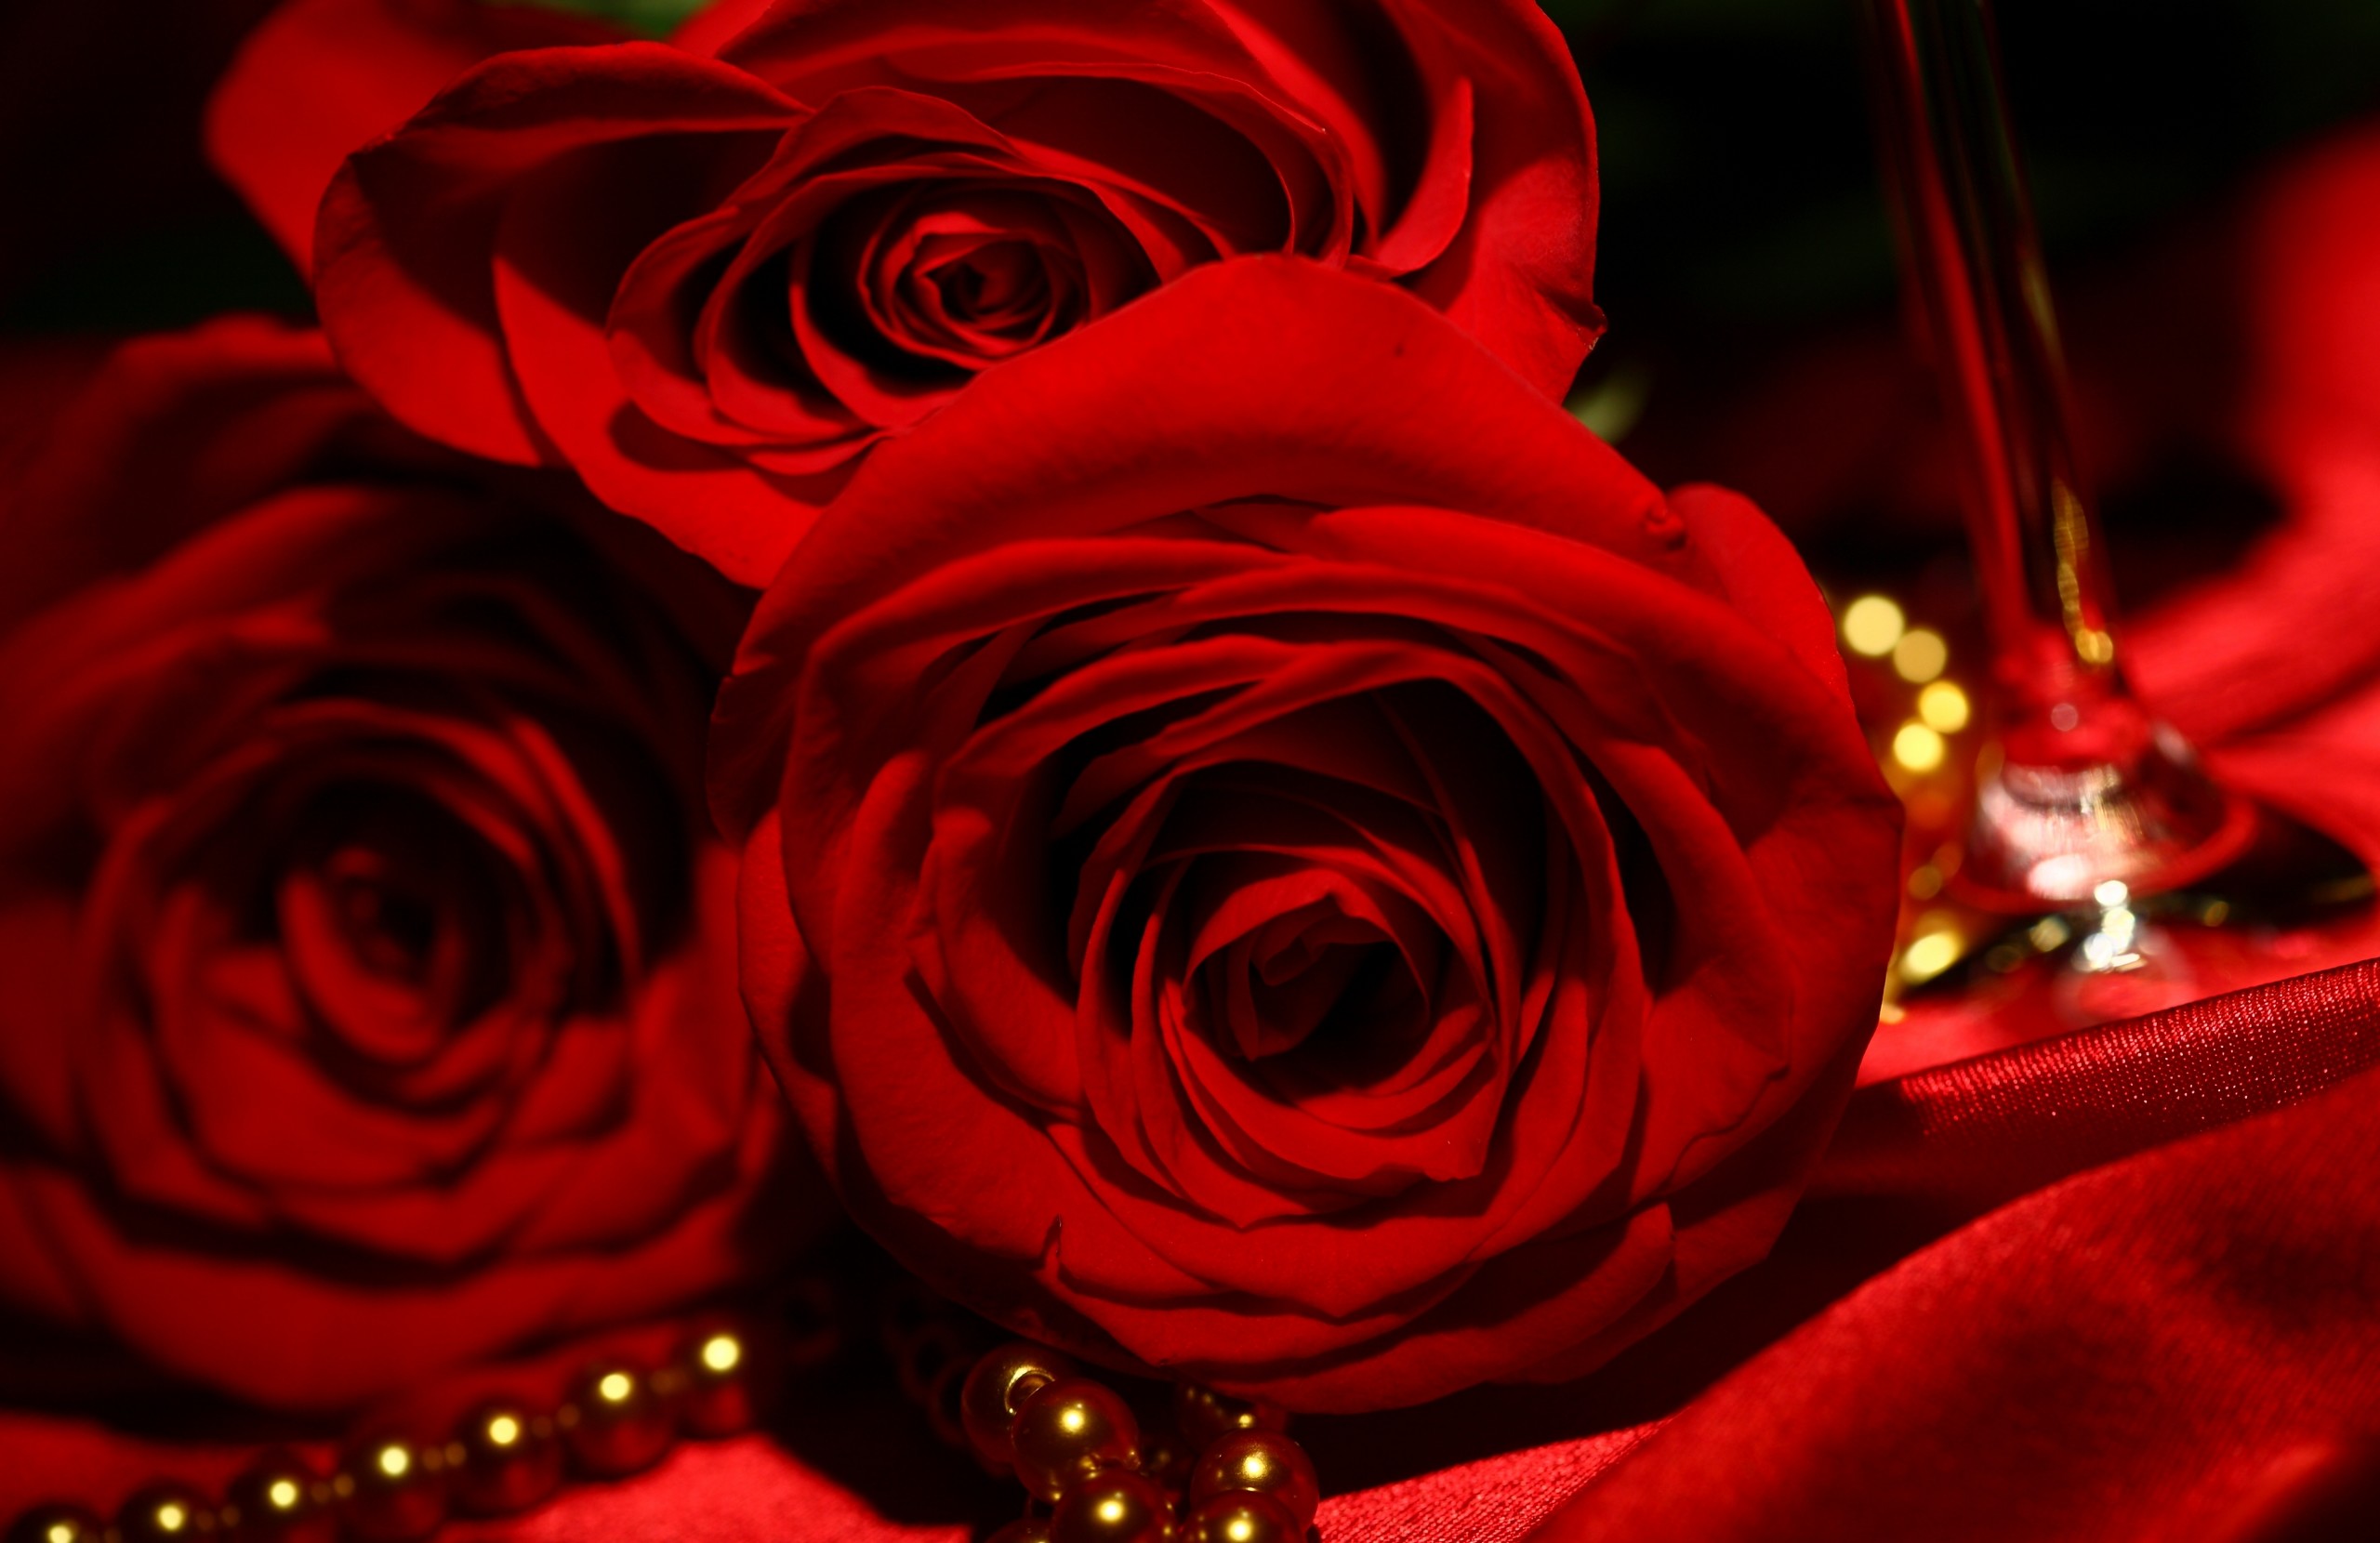 Red Rose Wallpaper Image